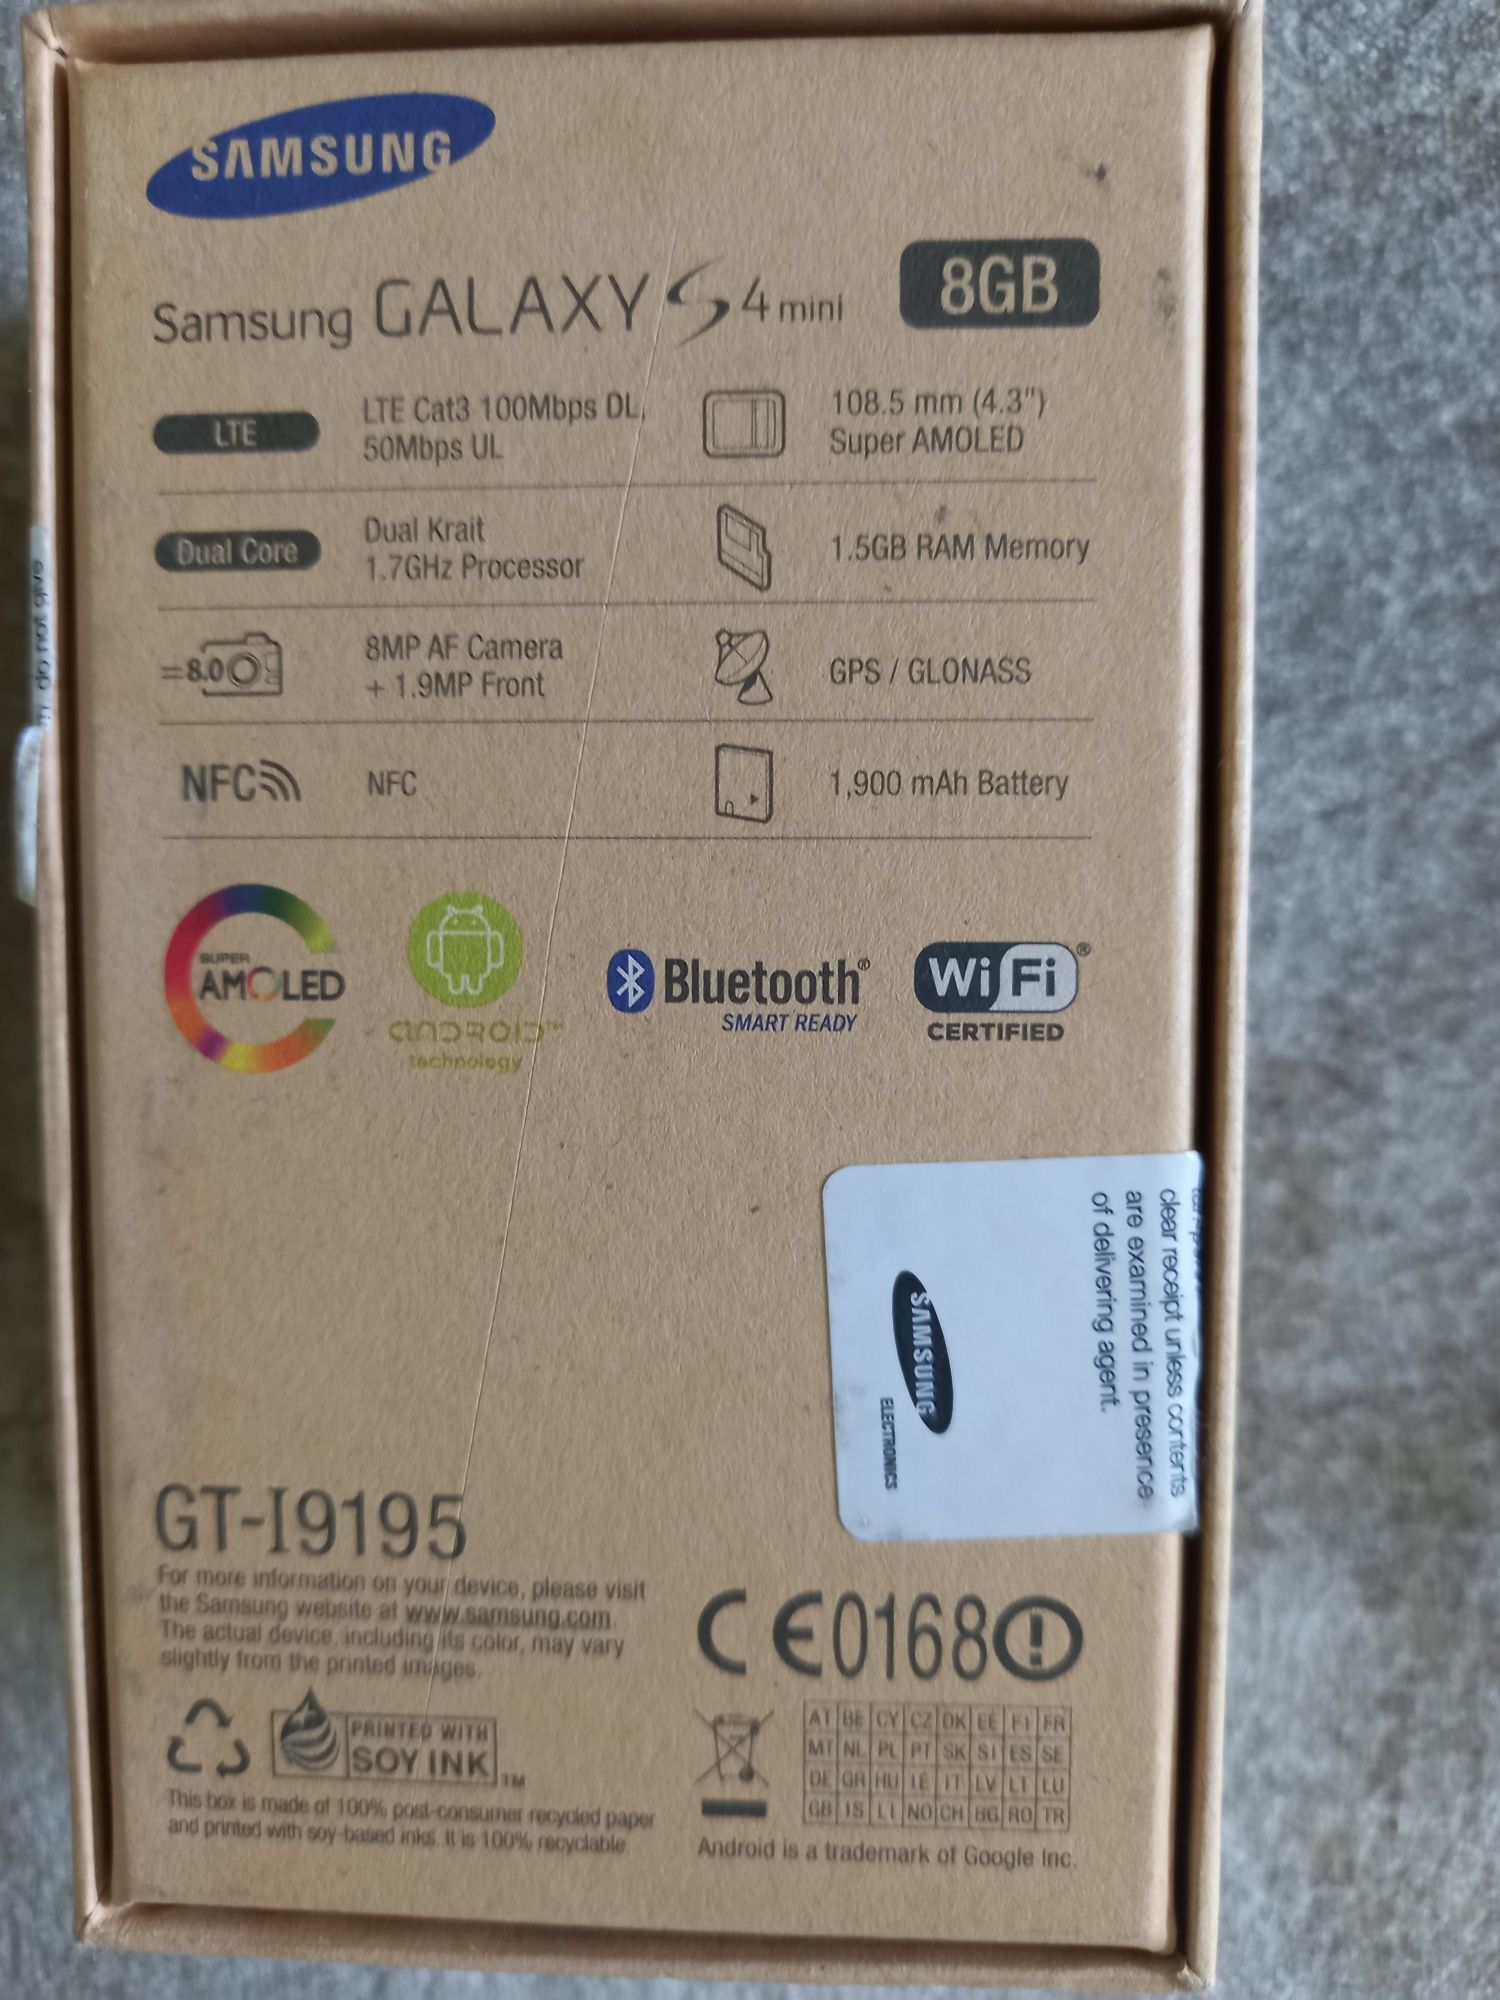 Samsung Galaxy S4 Mini (GT-I9195) +8GB